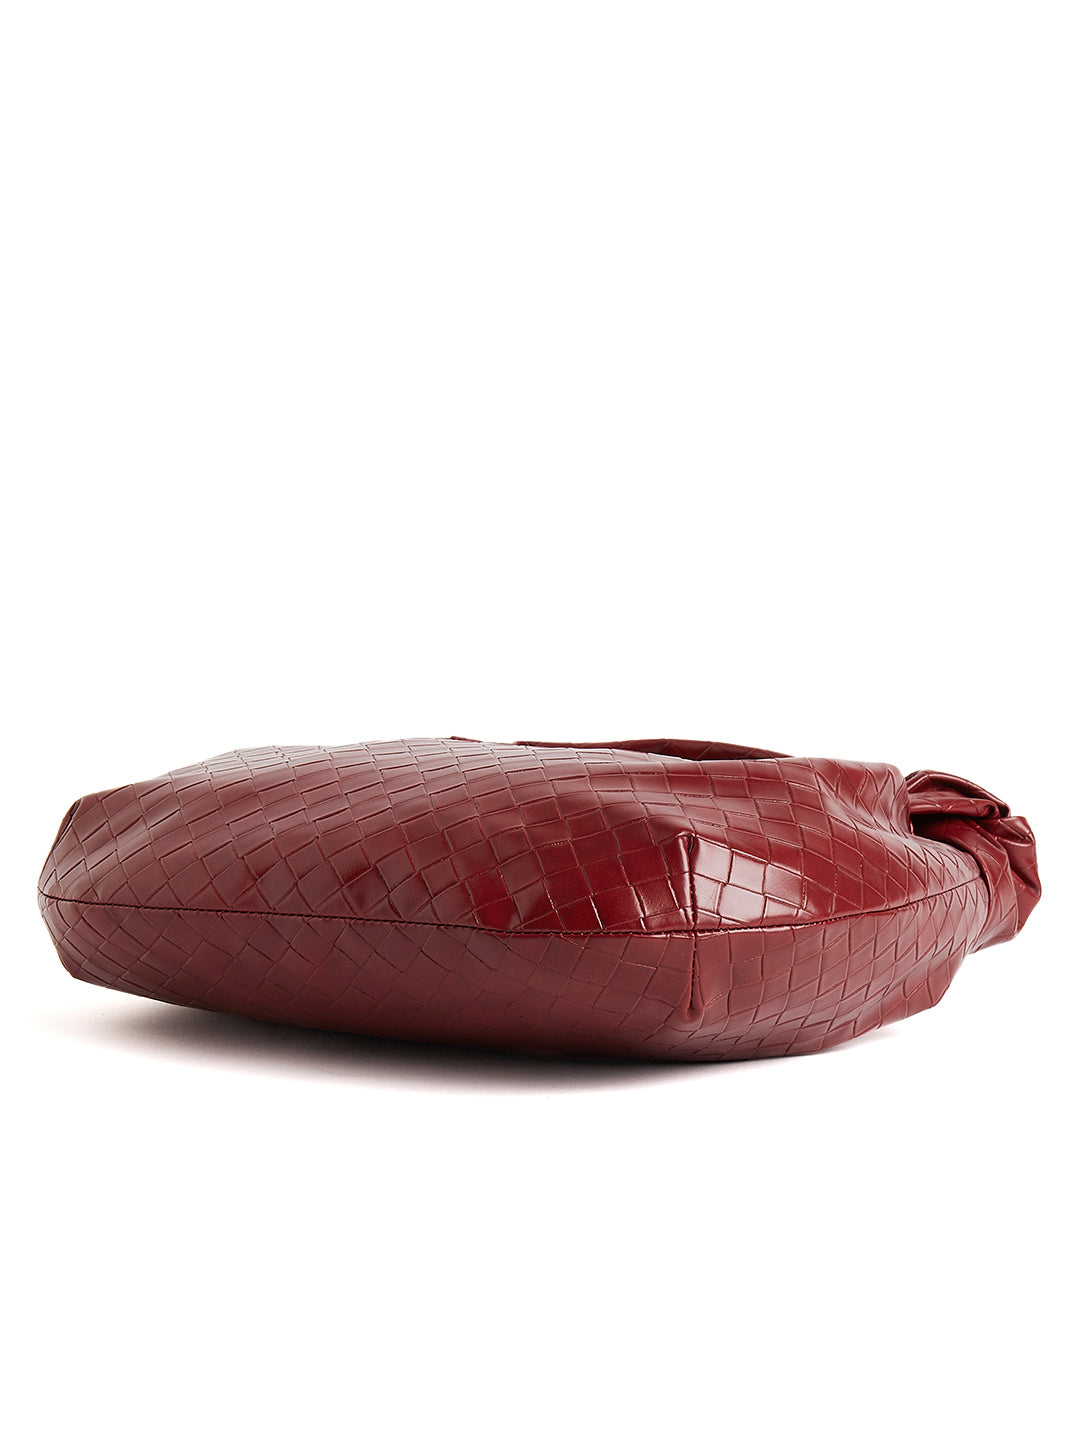 Red Via Spiga Leather Shoulder Hand Bag Purse Silver Hardware | eBay